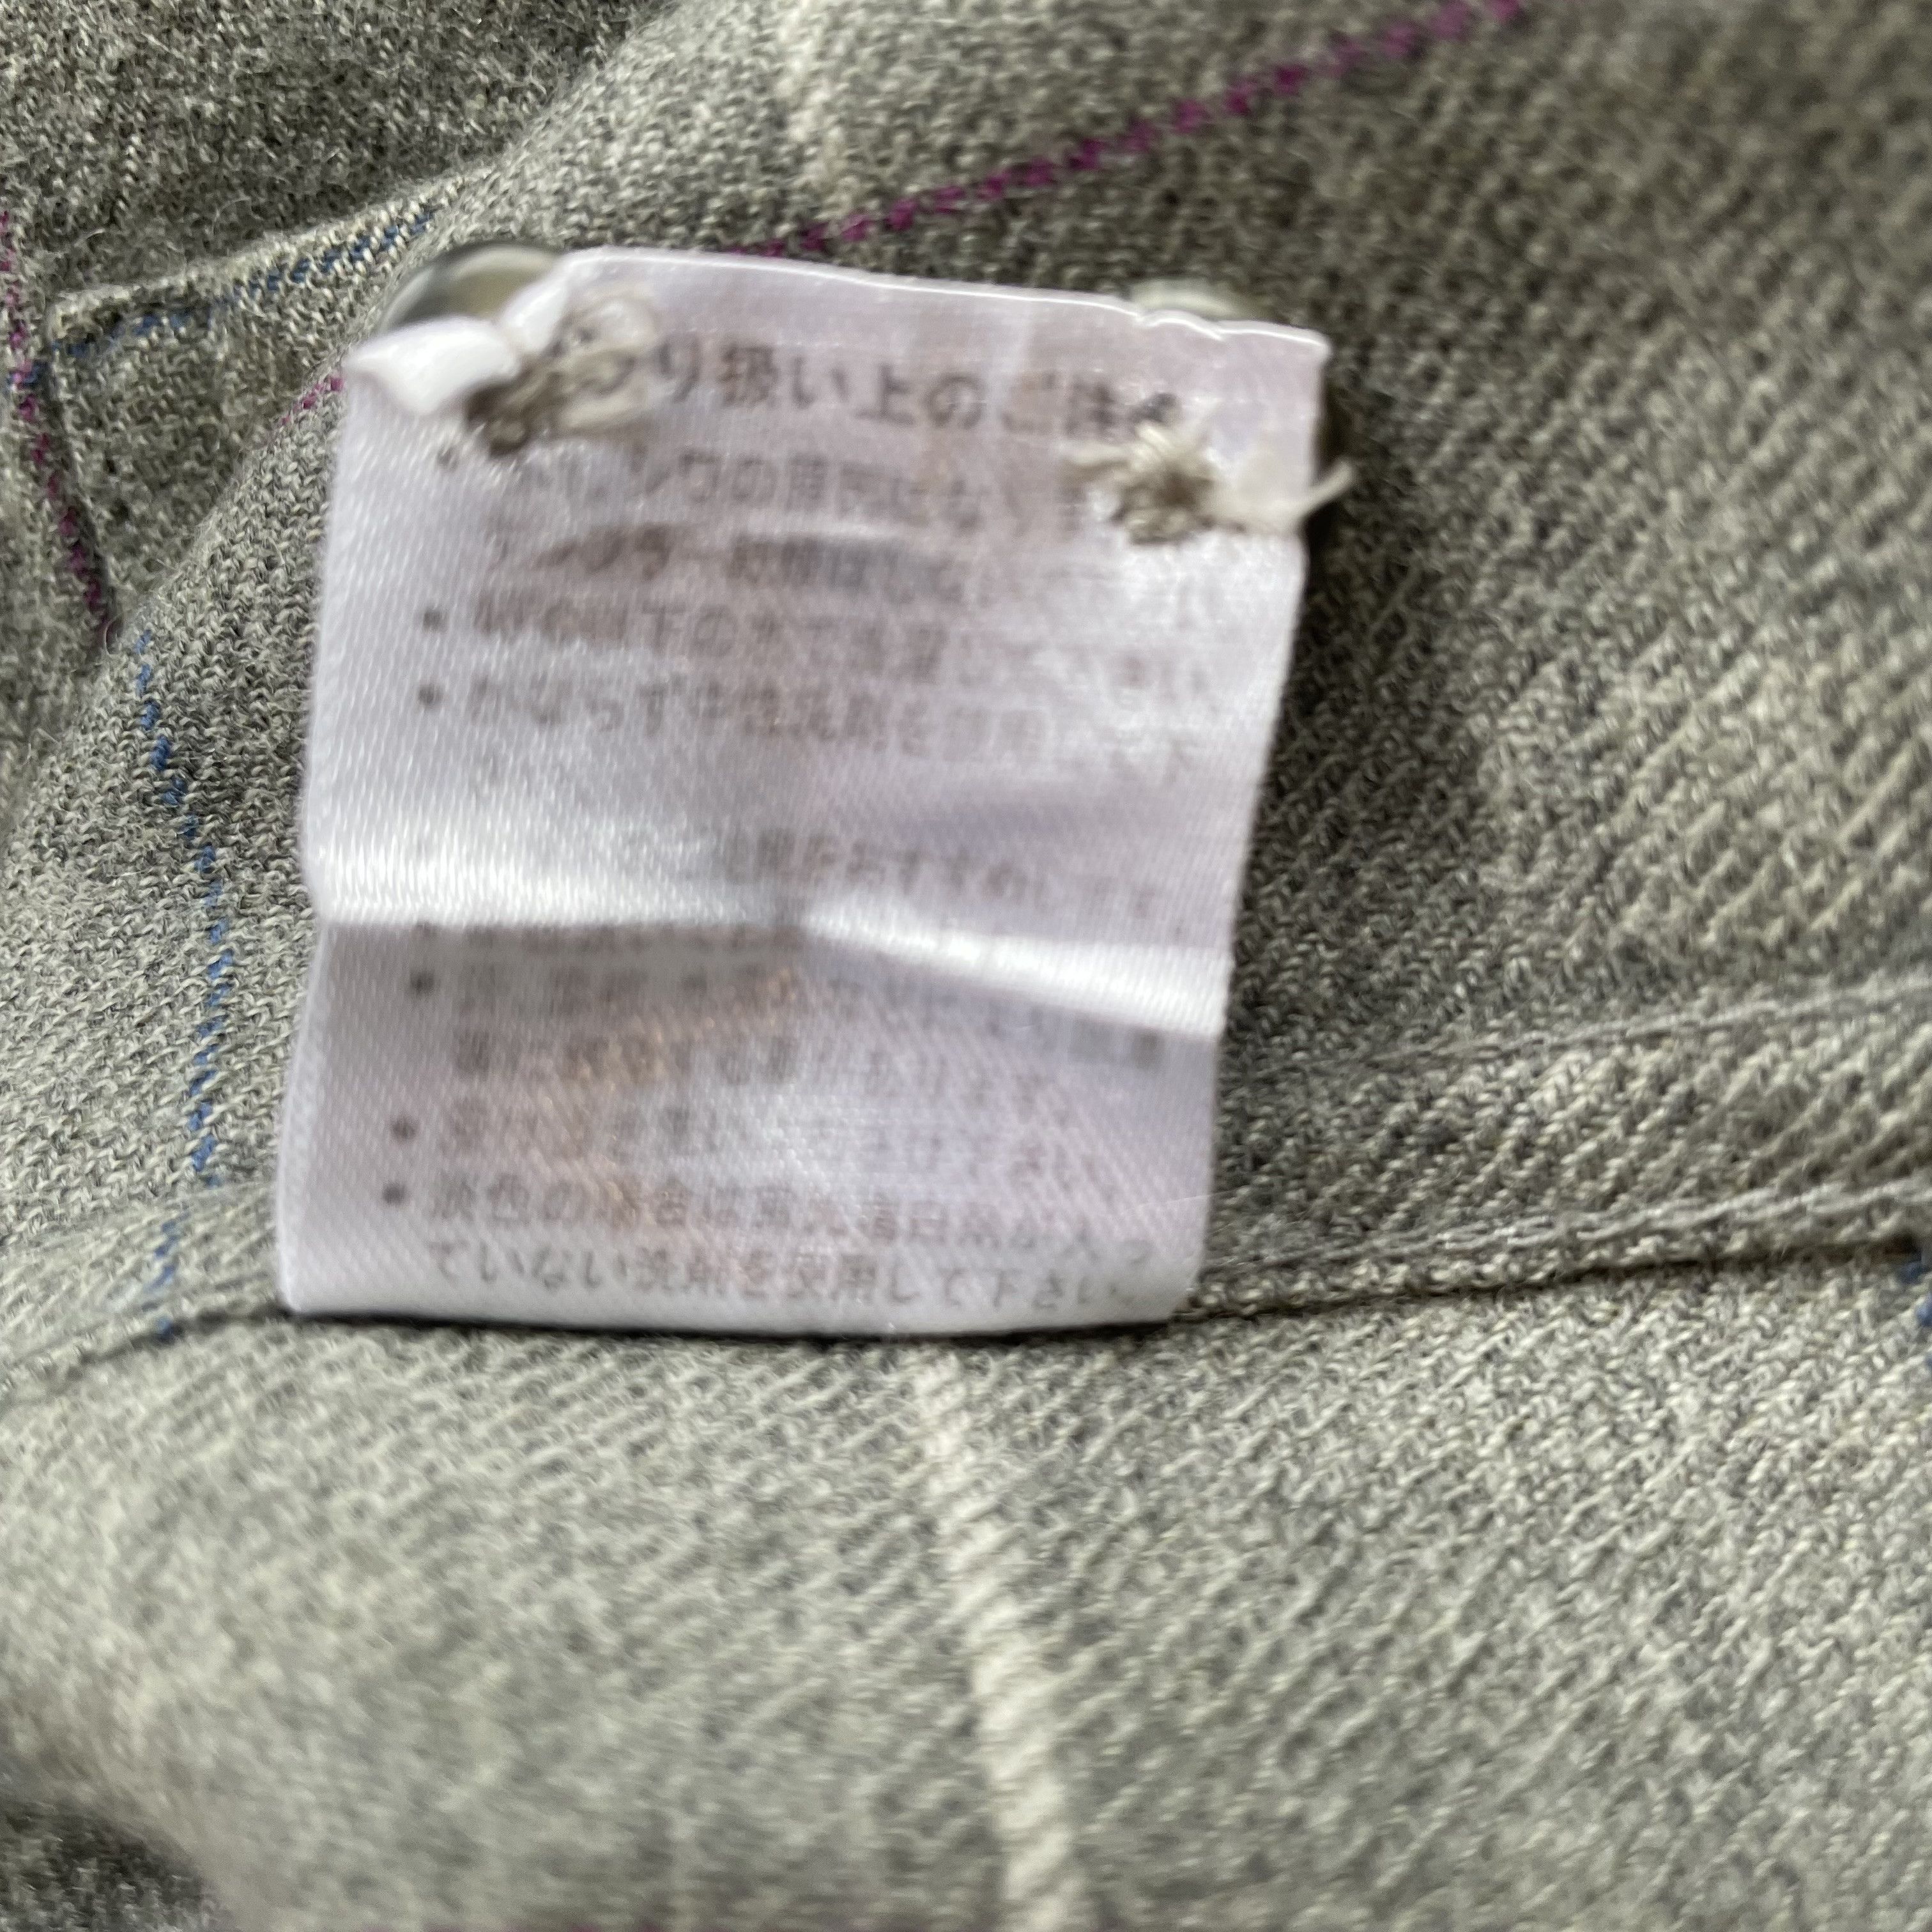 Kansai Yamamoto - Minimalist Check Shirt, Wool, (JP LL) - 6